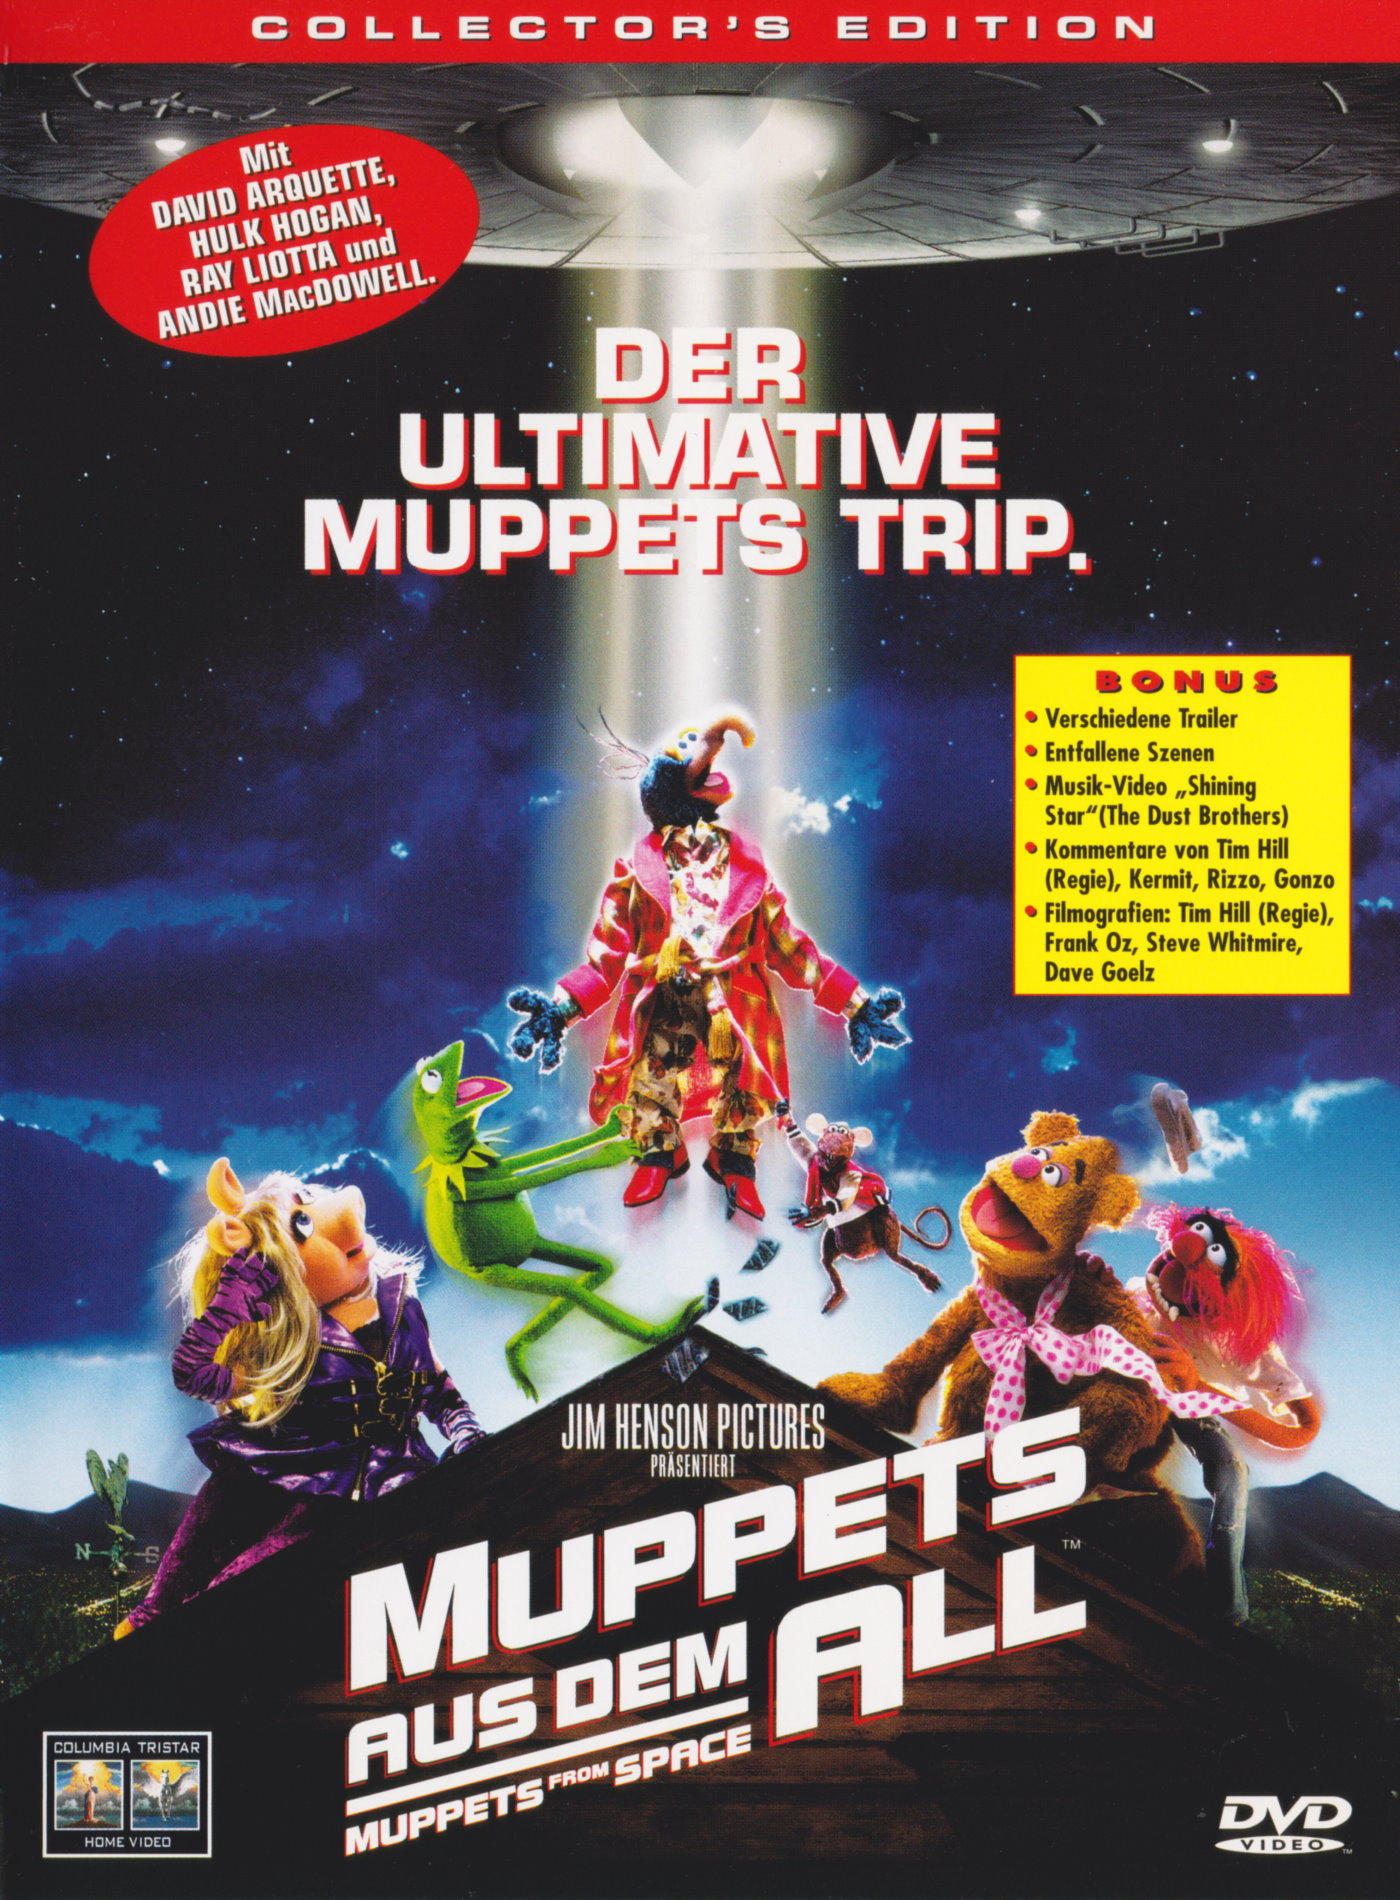 Cover - Muppets aus dem All.jpg